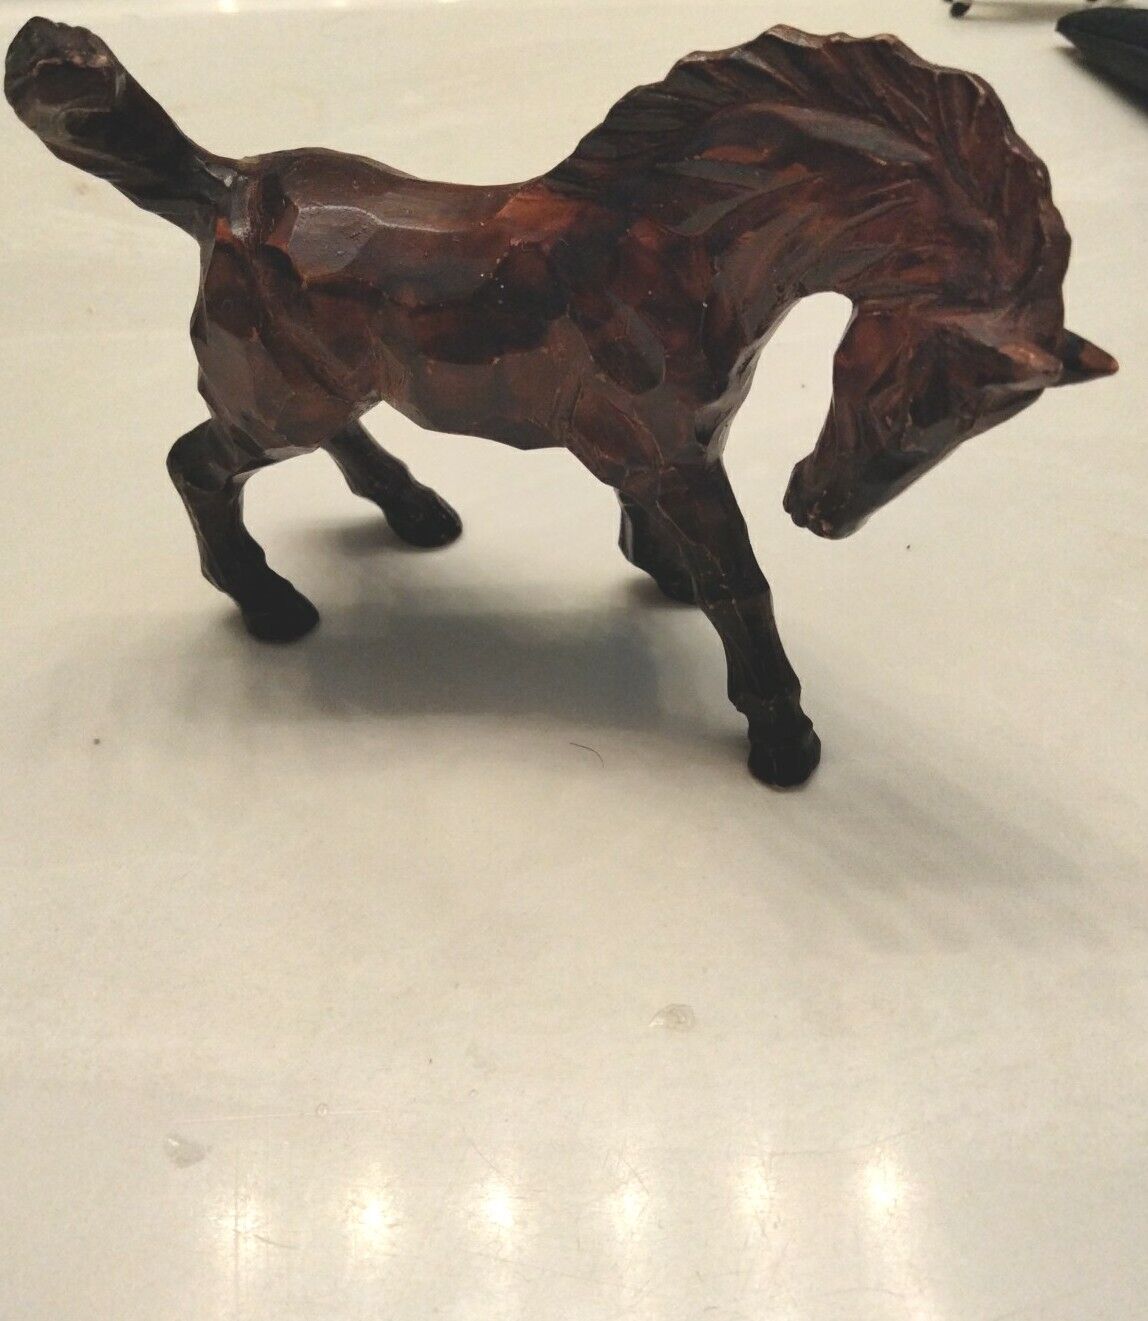 VTG MCM Enesco? Carved Cubist Geometric Ceramic Wild Horse Equine Figurine Rare